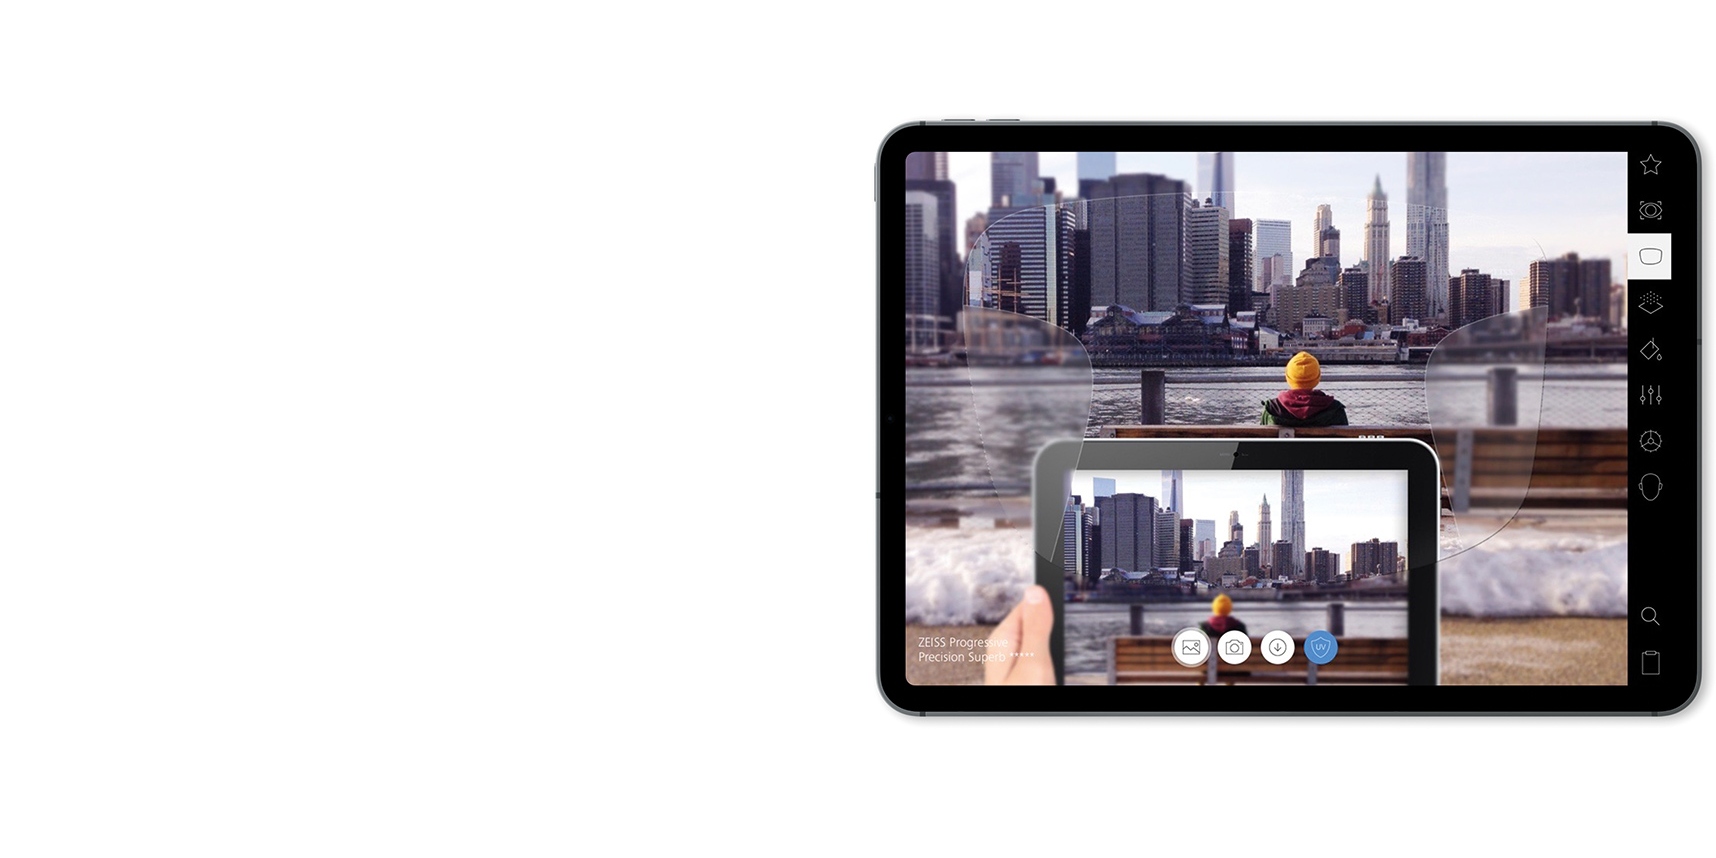 ZEISS lencsék bemutatása iPad-en az AR (kiterjesztett valóság) segítségével.